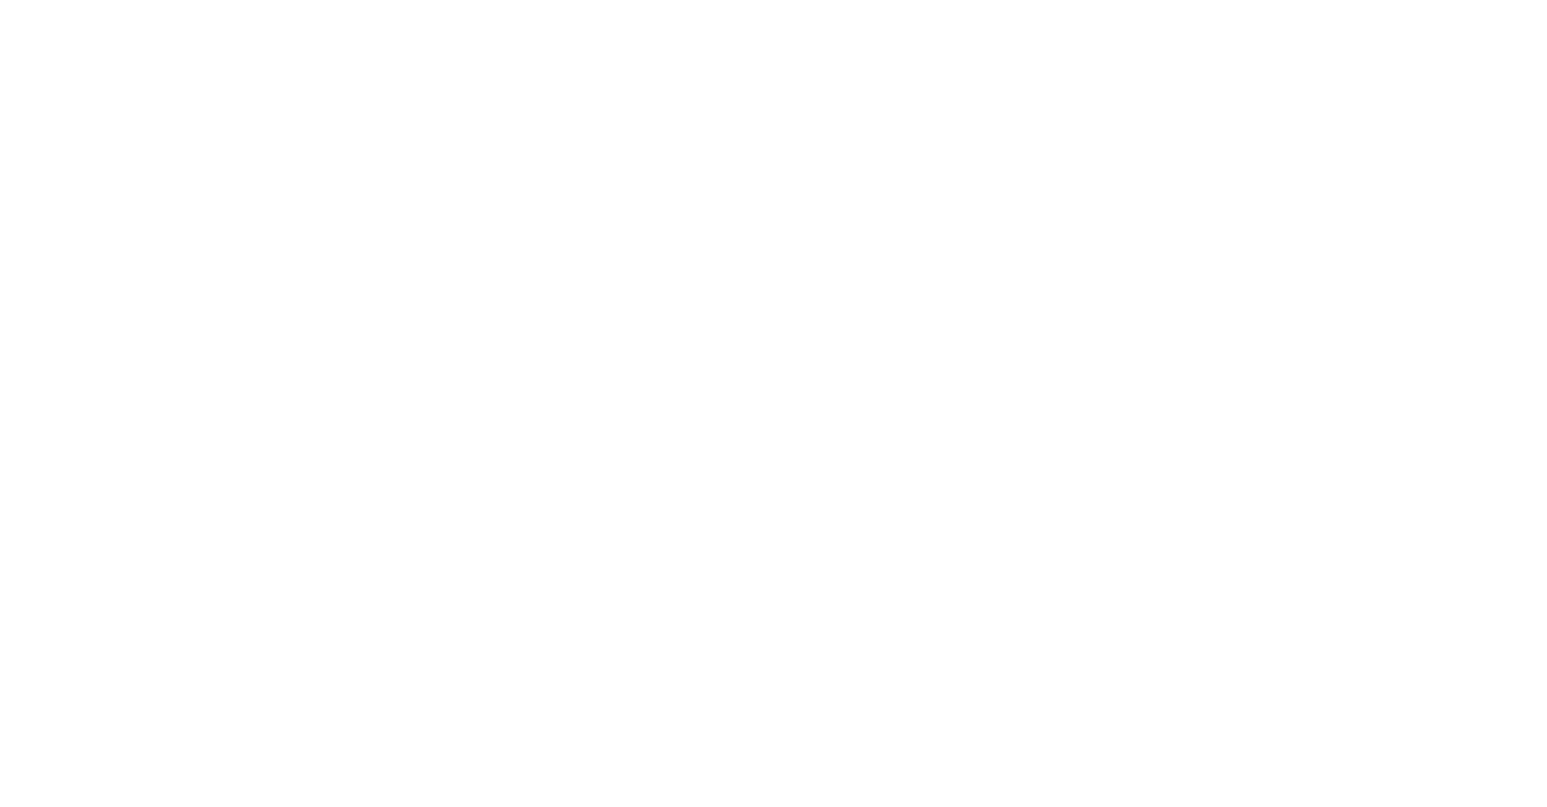 Allient logo for dark backgrounds (transparent PNG)